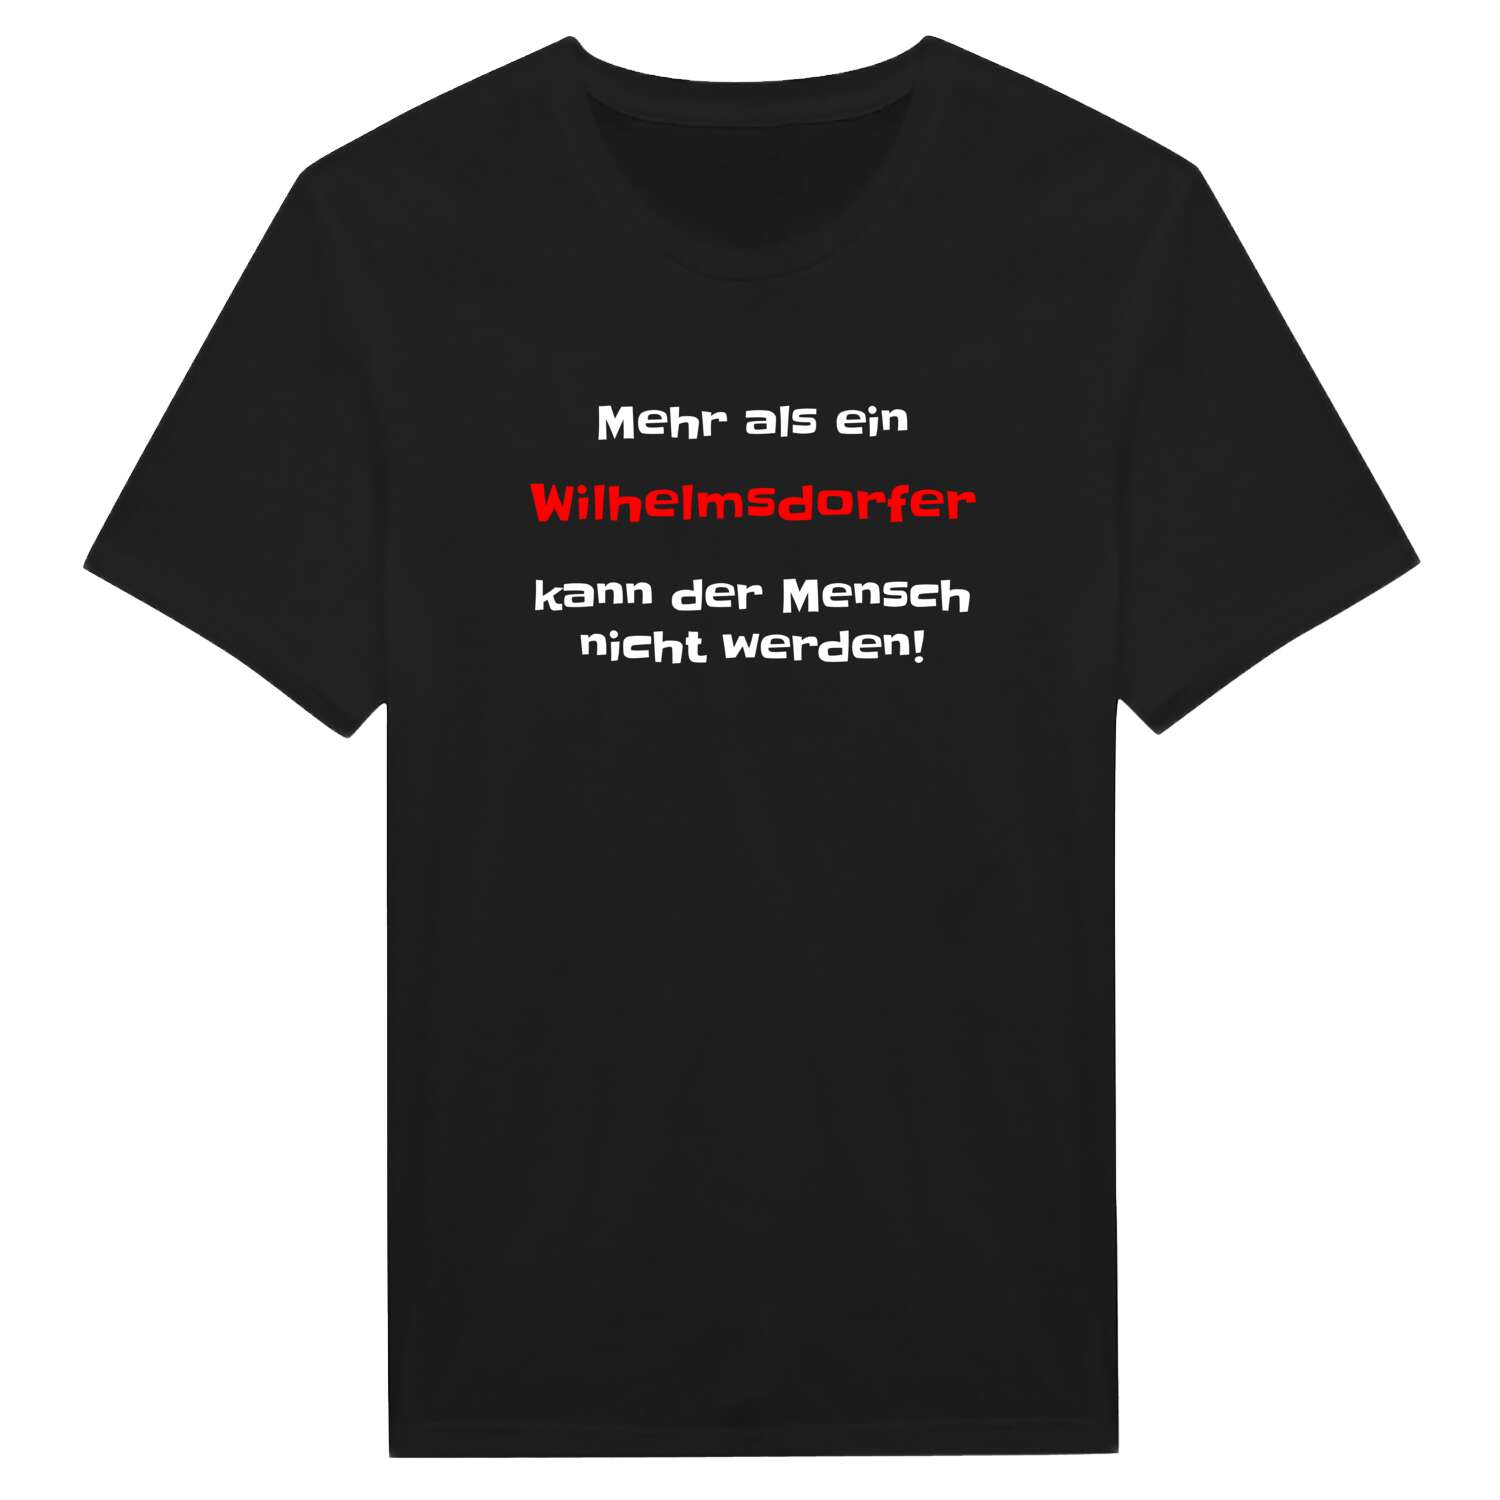 Wilhelmsdorf T-Shirt »Mehr als ein«